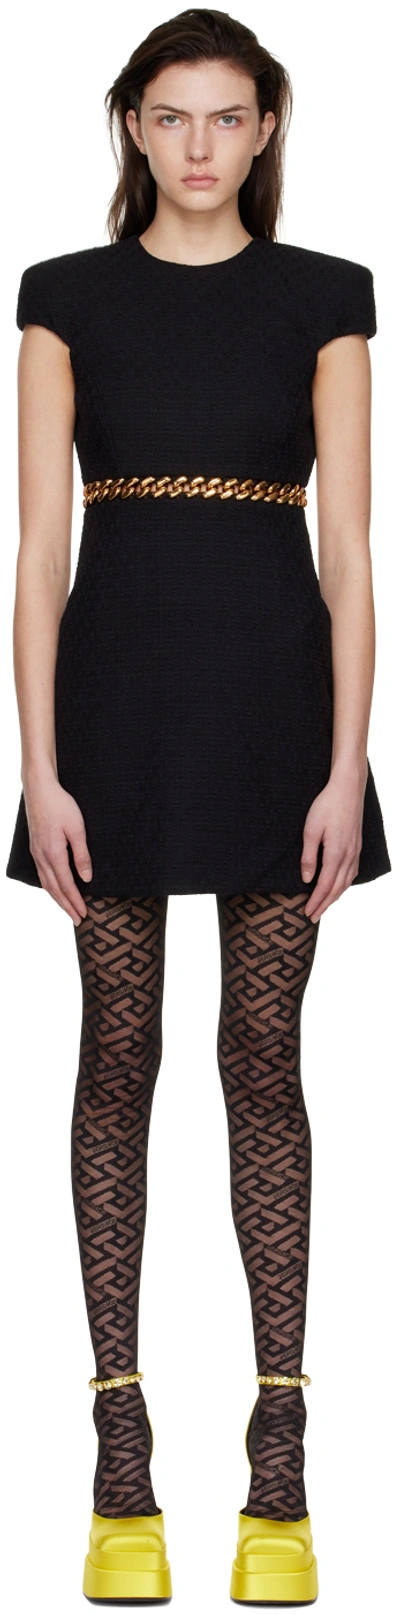 Versace Tweed Chain Dress, Female, Black, 50